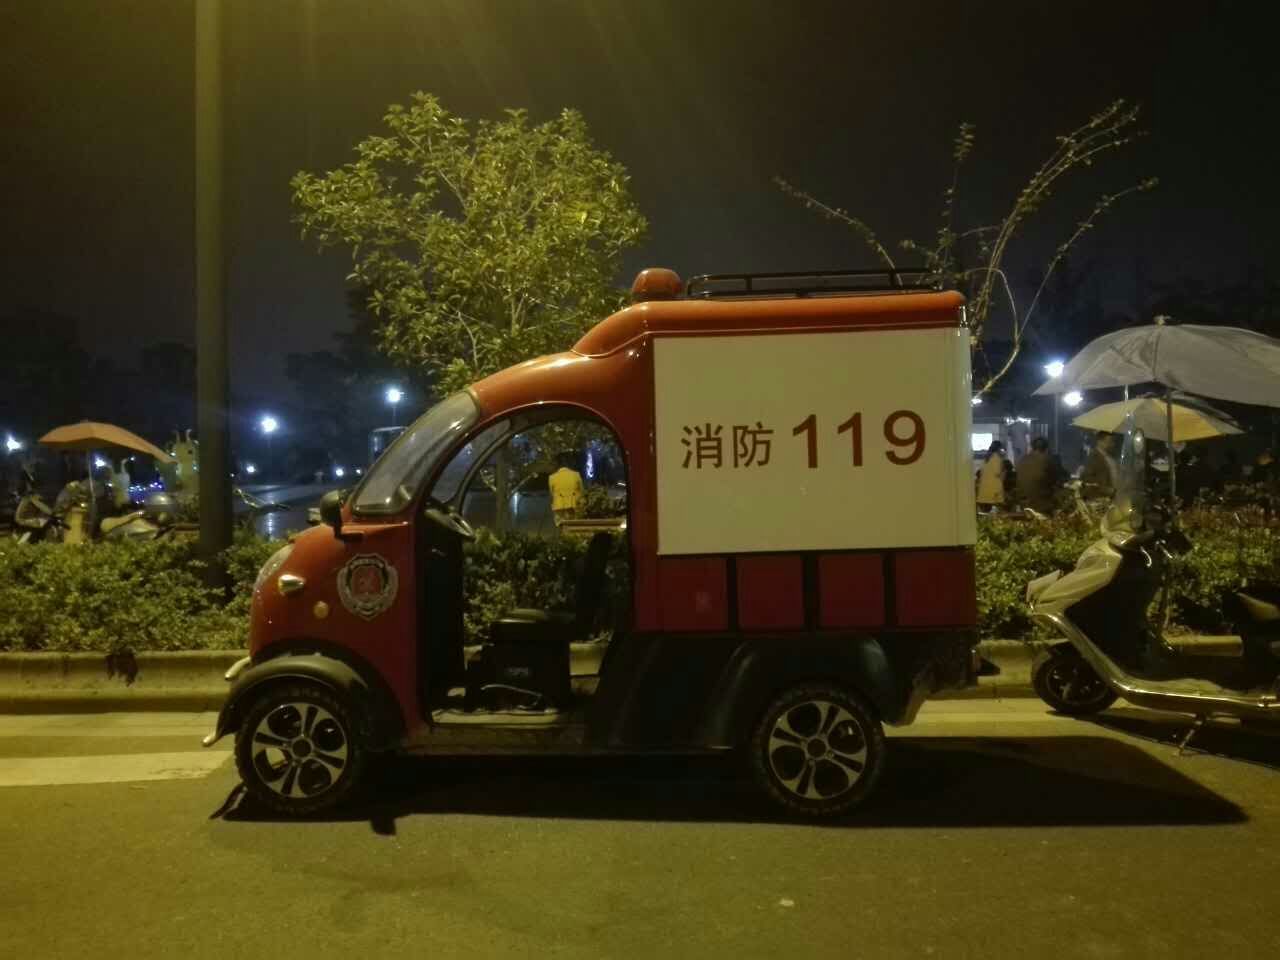 Мини-пожарная машина. Китай, г. Иу. | Пикабу